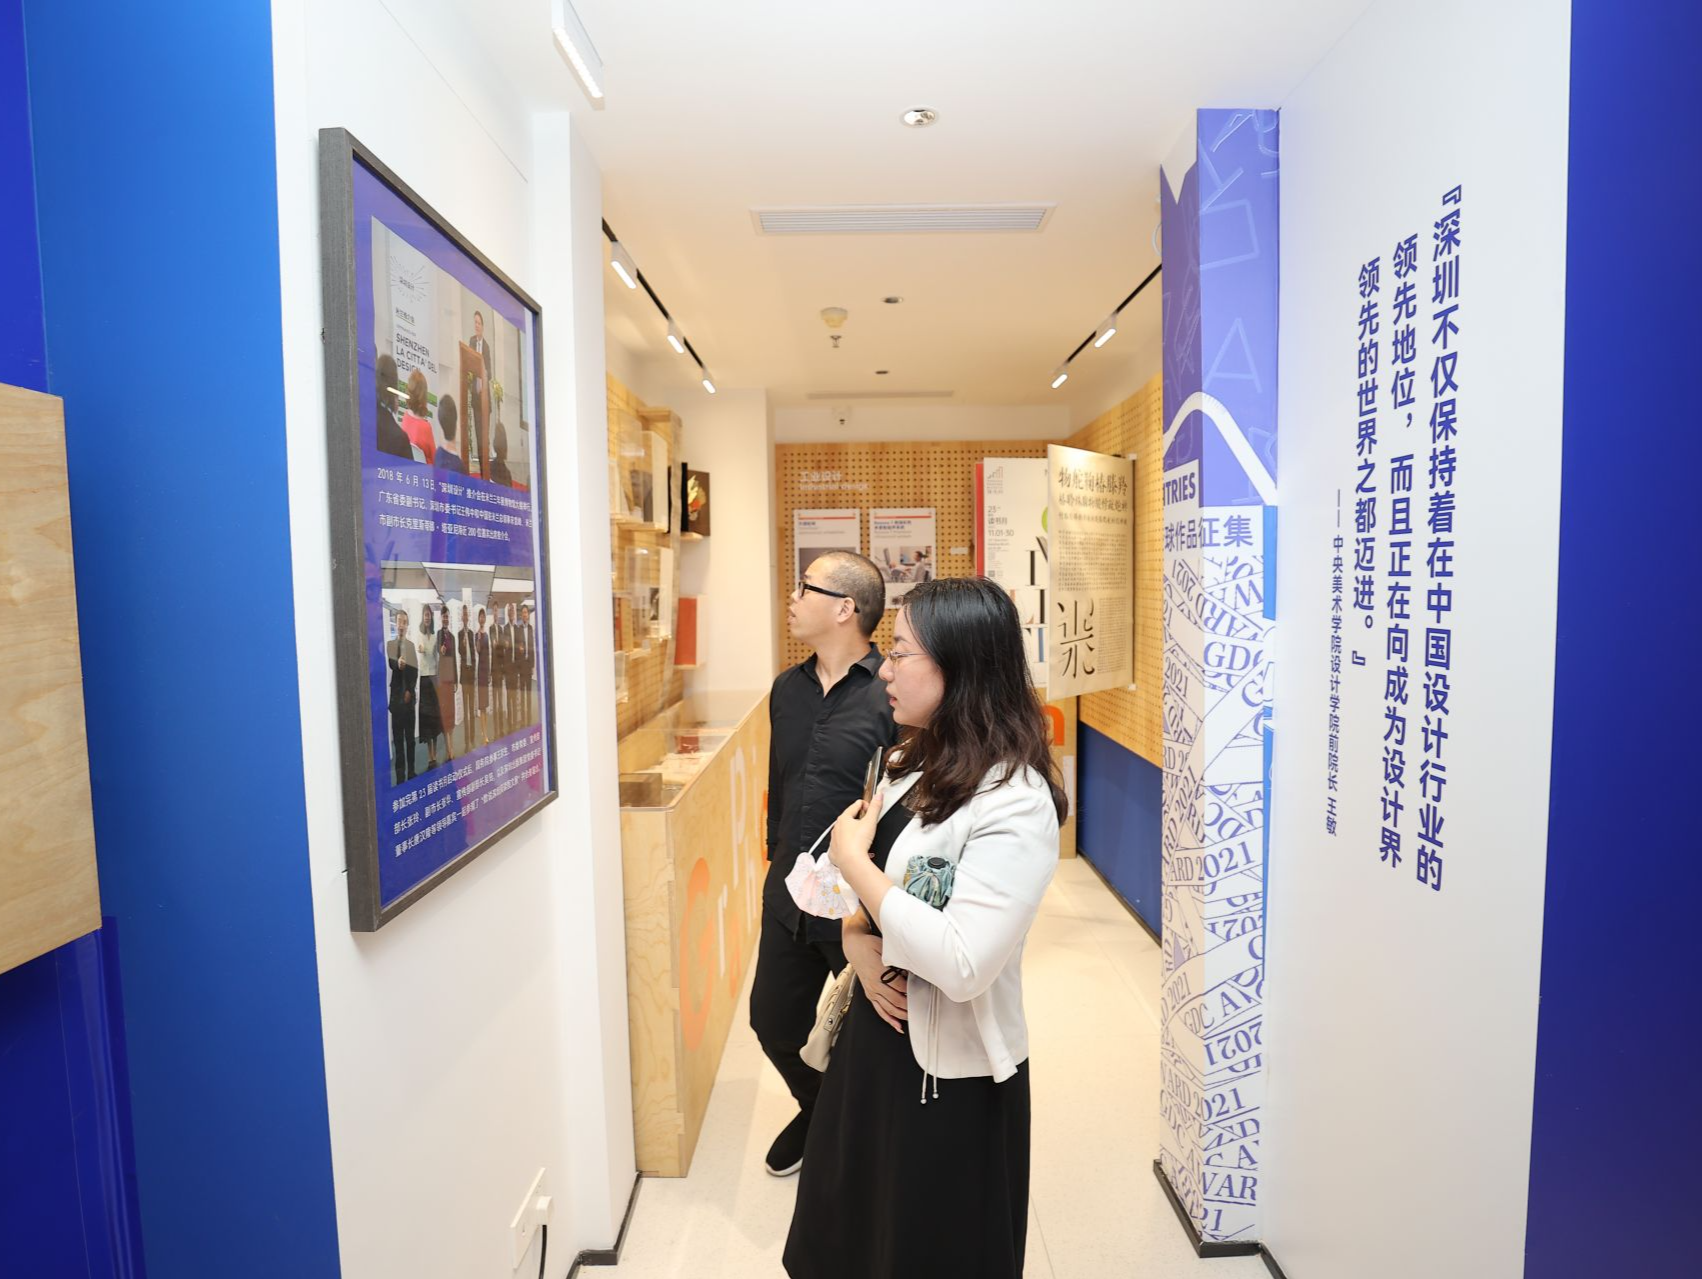 深圳市文化创意与设计联合会展示中心23日揭牌